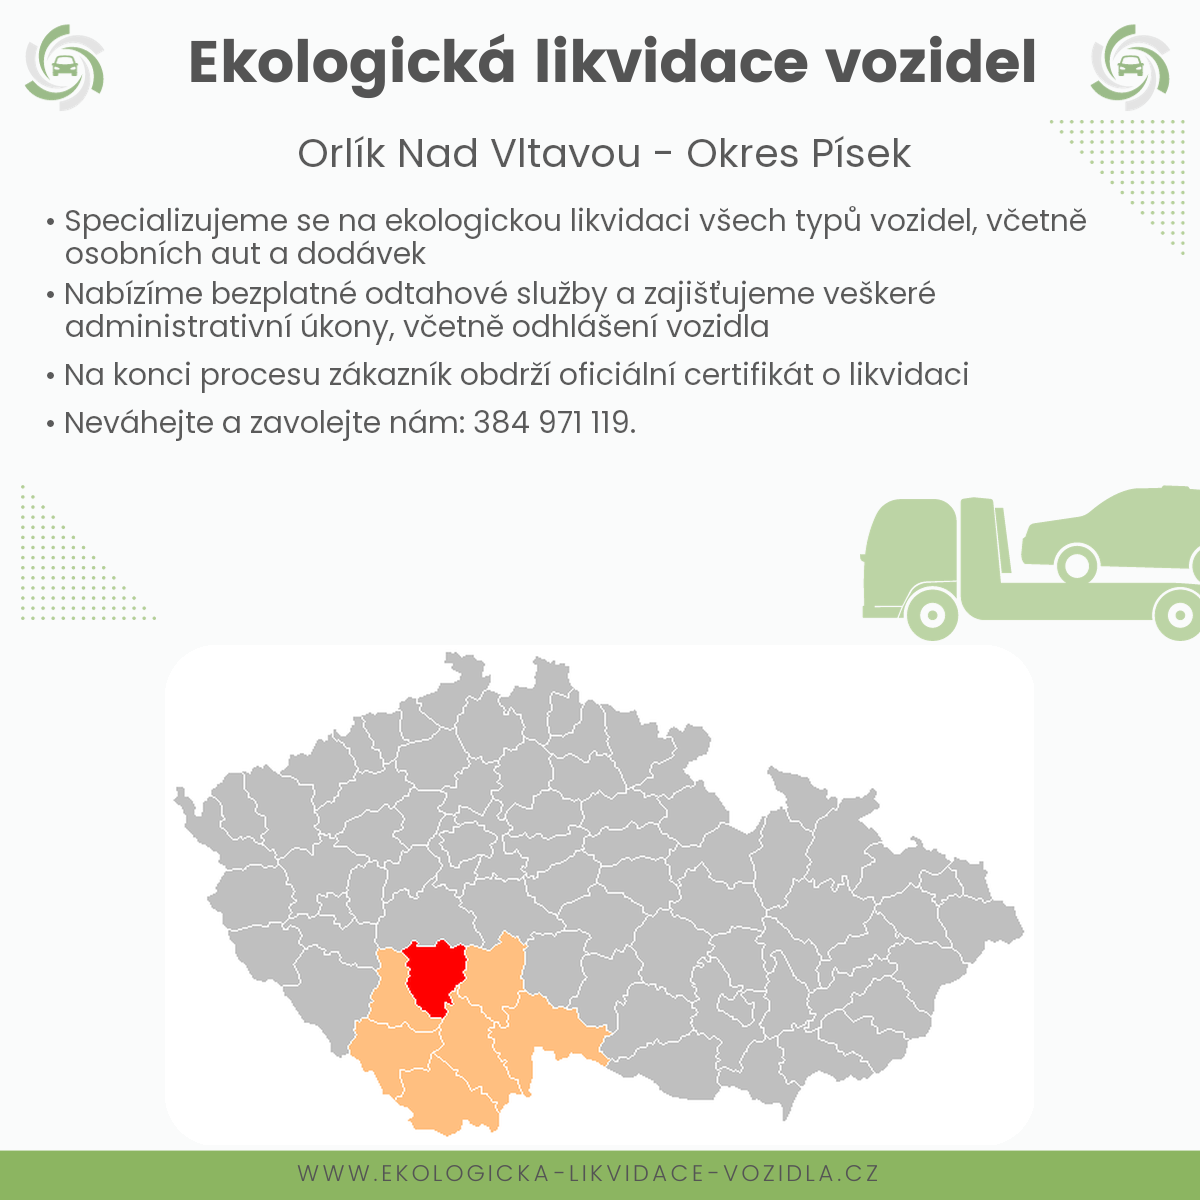 likvidace vozidel - Orlík nad Vltavou